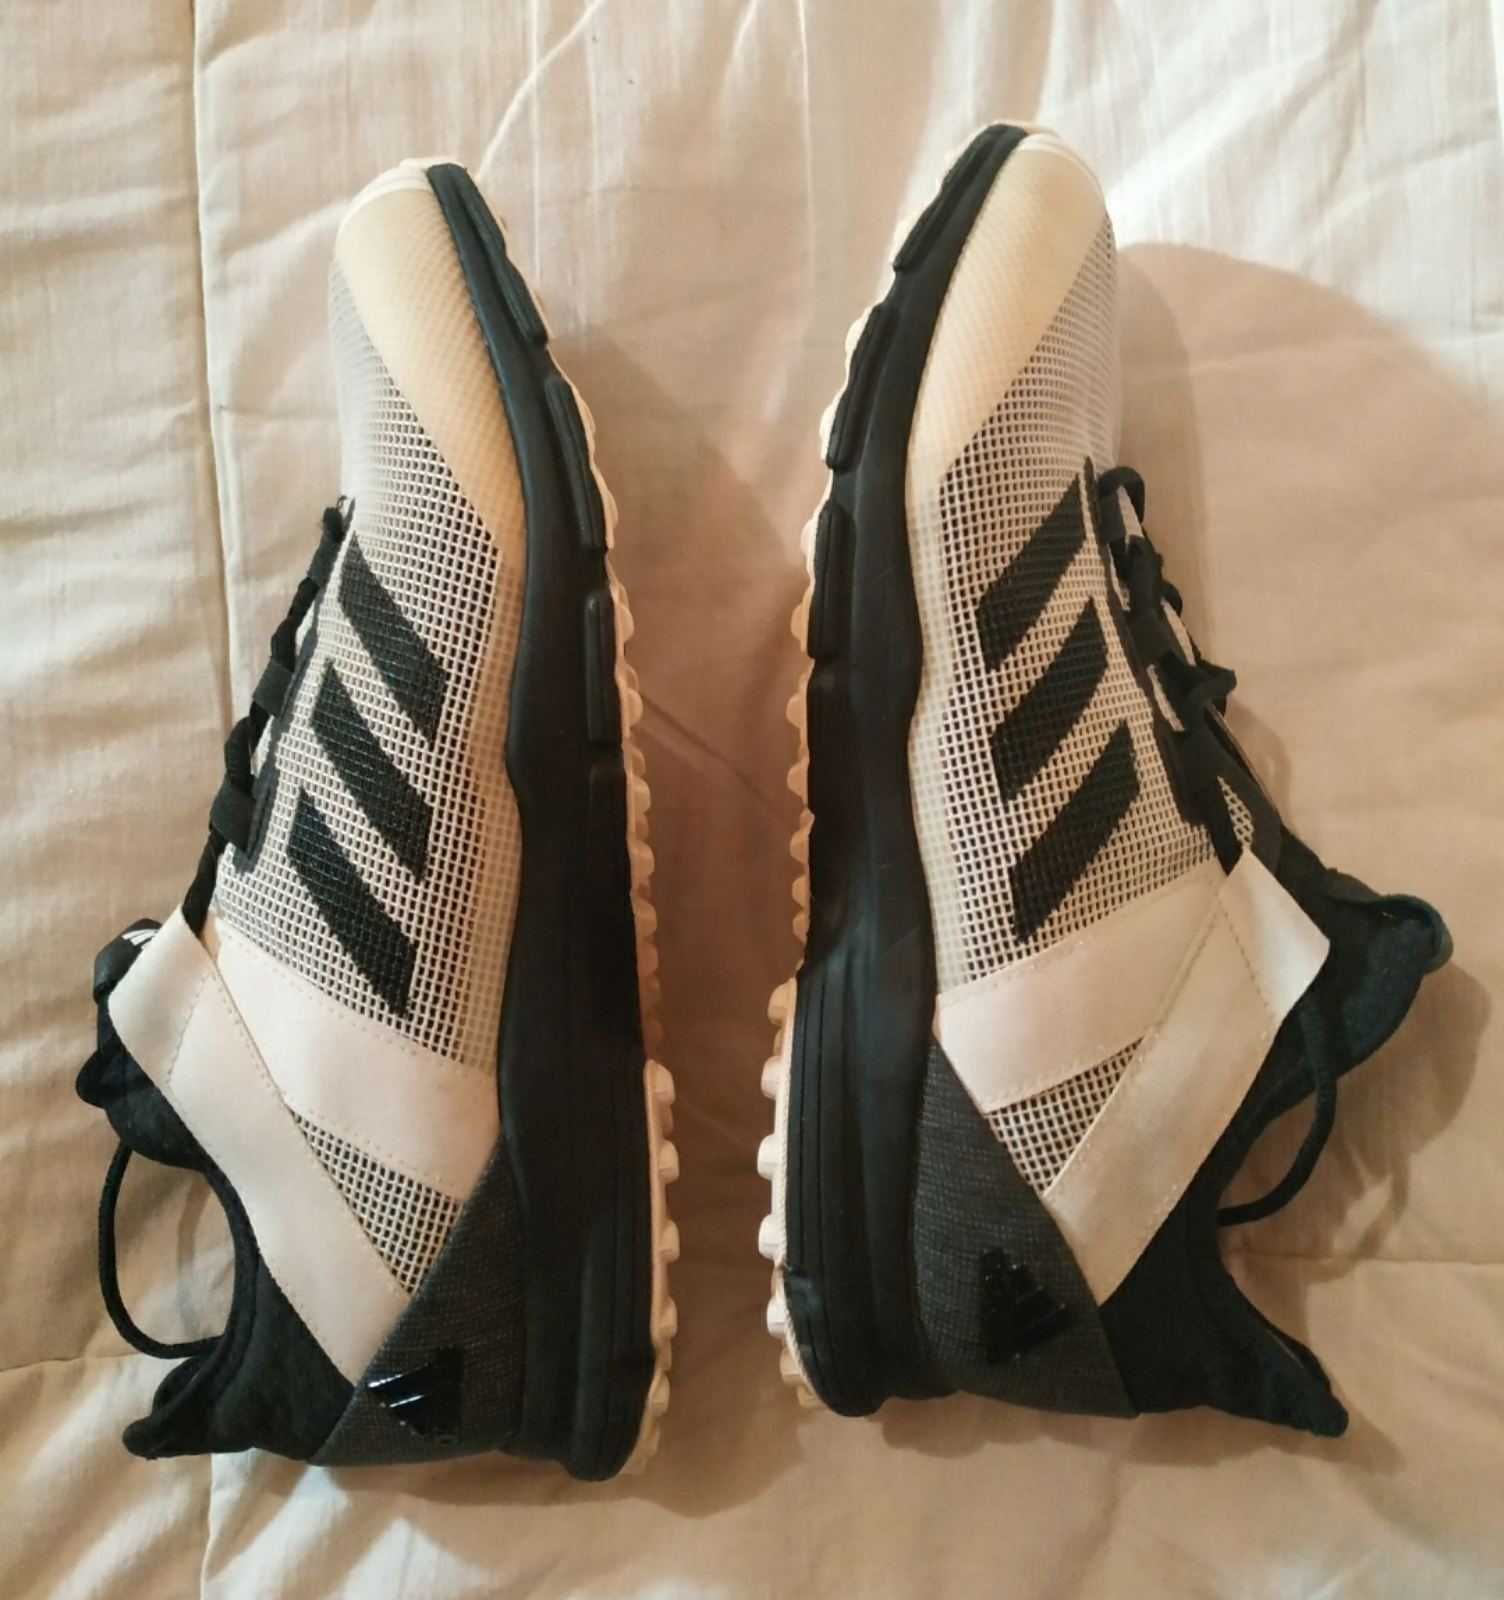 Кроссовки Adidas 46 размер,подошва SPRINTFRAME.